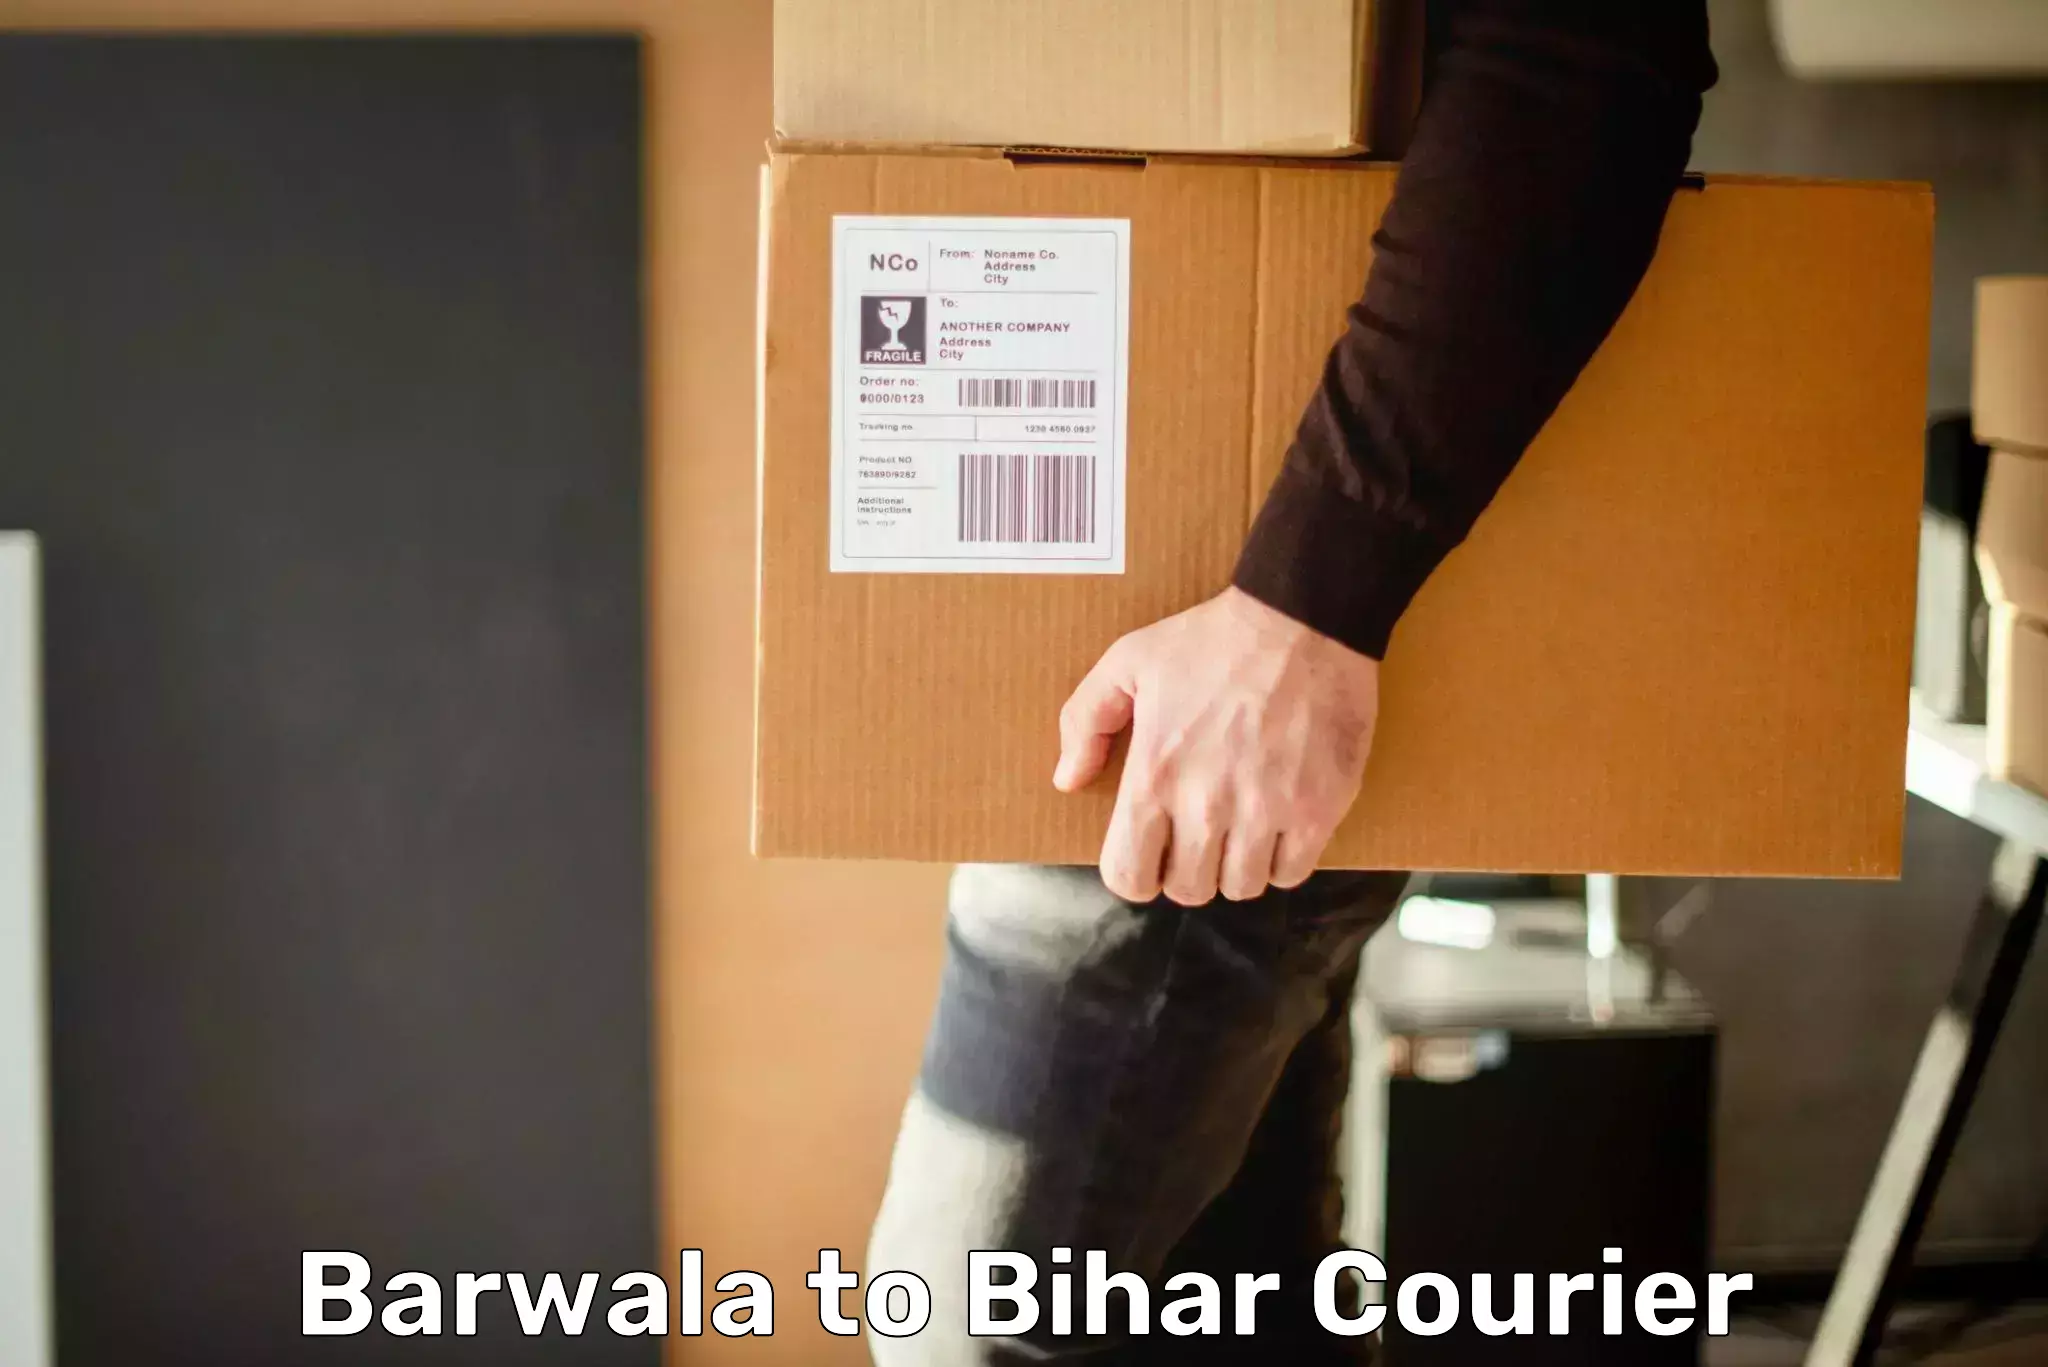 Premium courier solutions in Barwala to Bihar